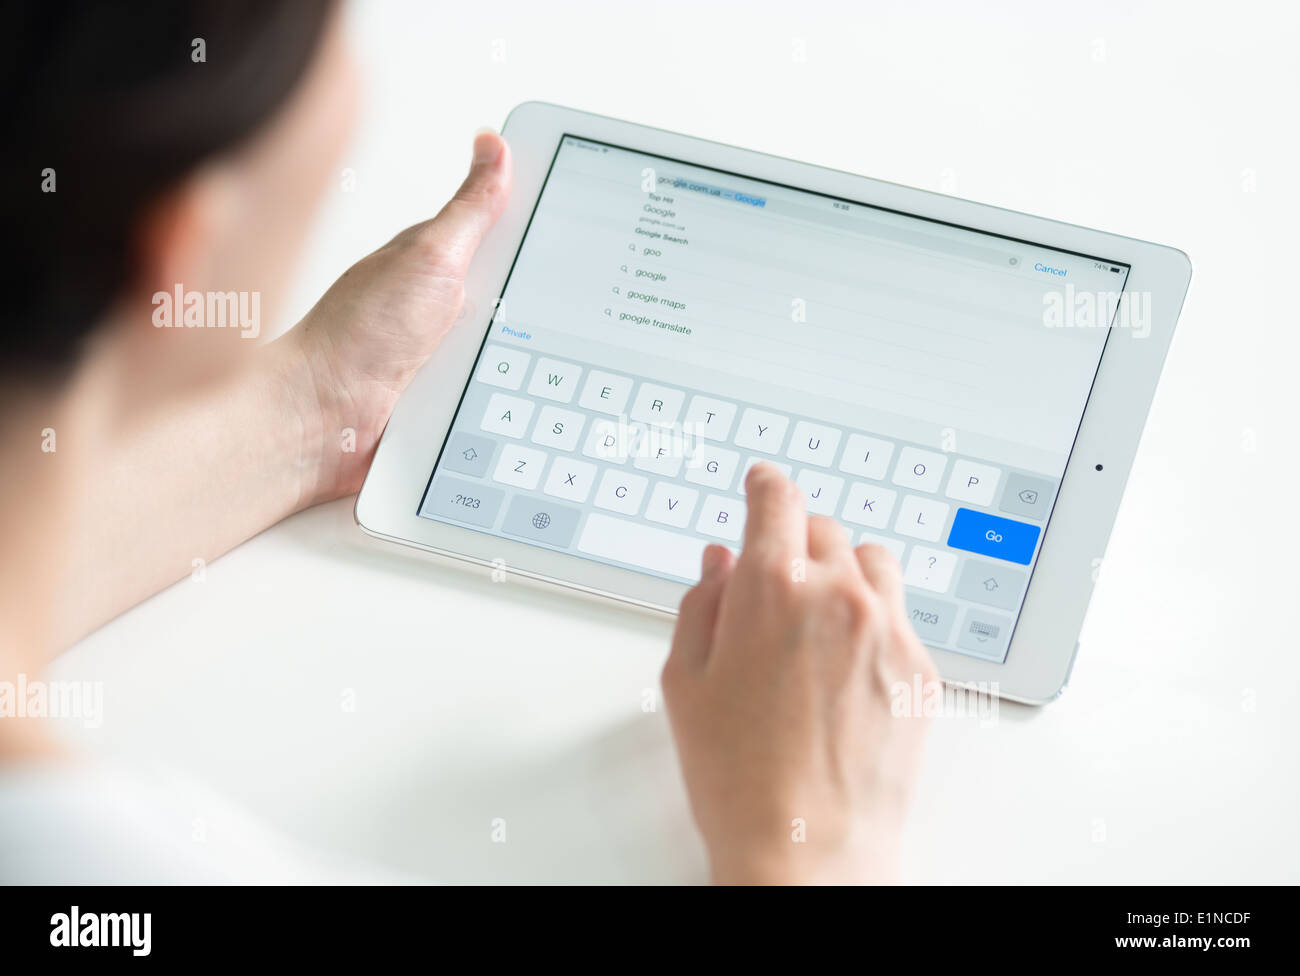 Woman holding a white Apple iPad Air et la saisie pour la recherche Google web page dans Safari browser Banque D'Images